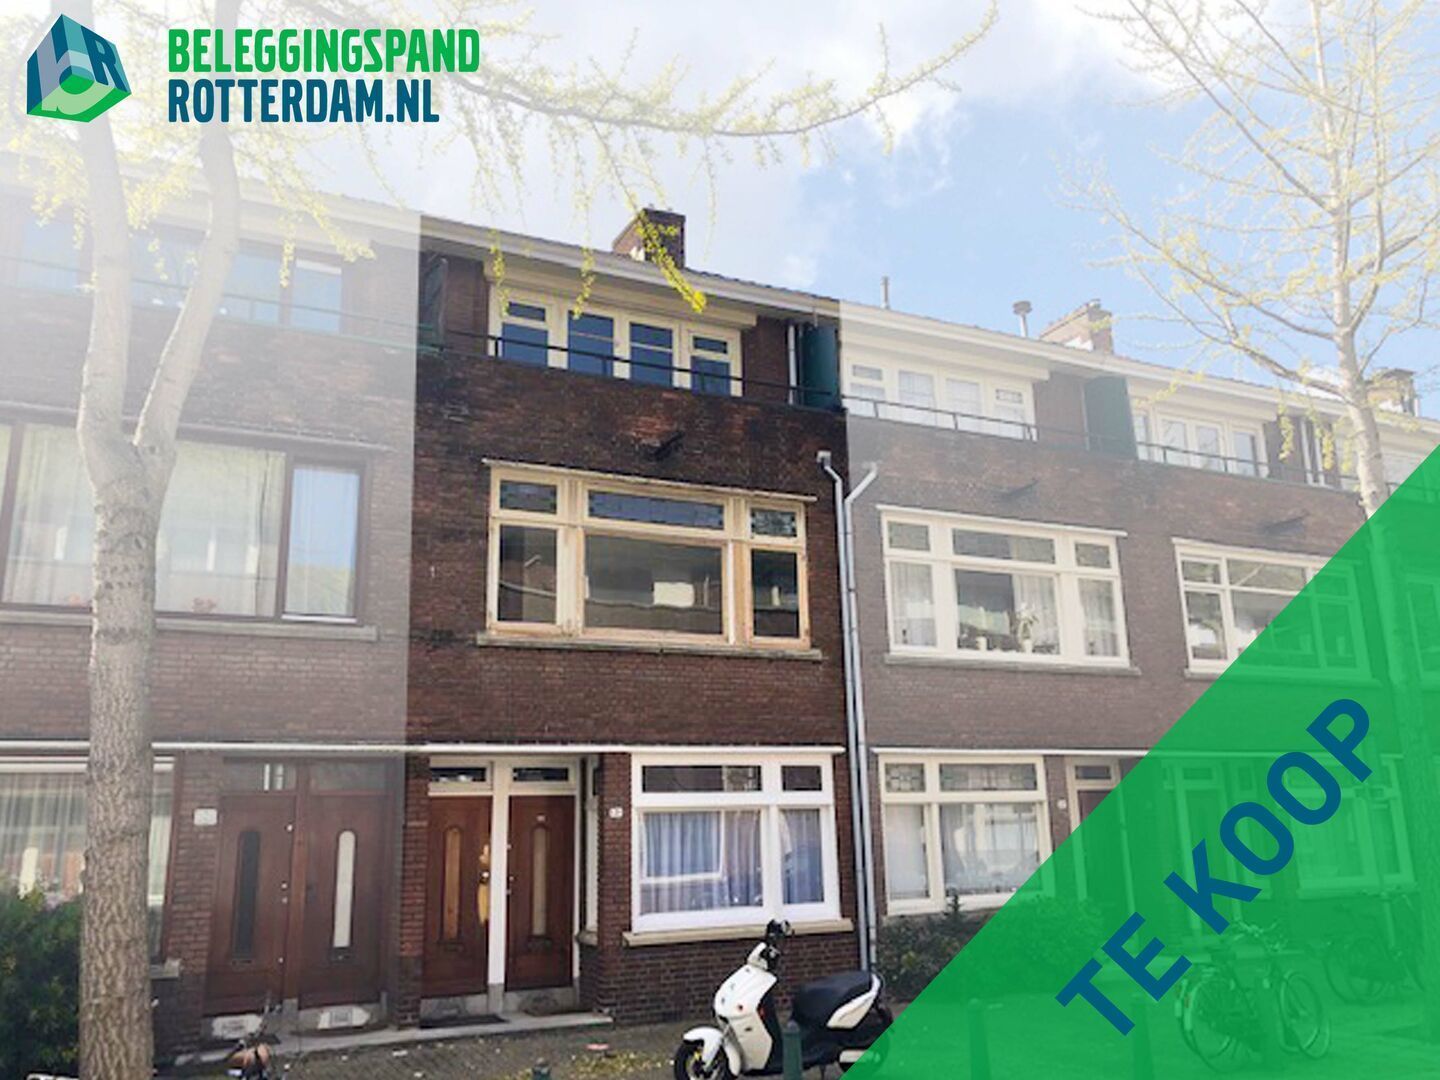 Nieuws: 28-05-2021 KOOP (ONLINE): geheel pand bestaande uit twee woningen gelegen aan de Zwaluwstraat te Rotterdam Zuid (Charlois) - Beleggingspanden Rotterdam